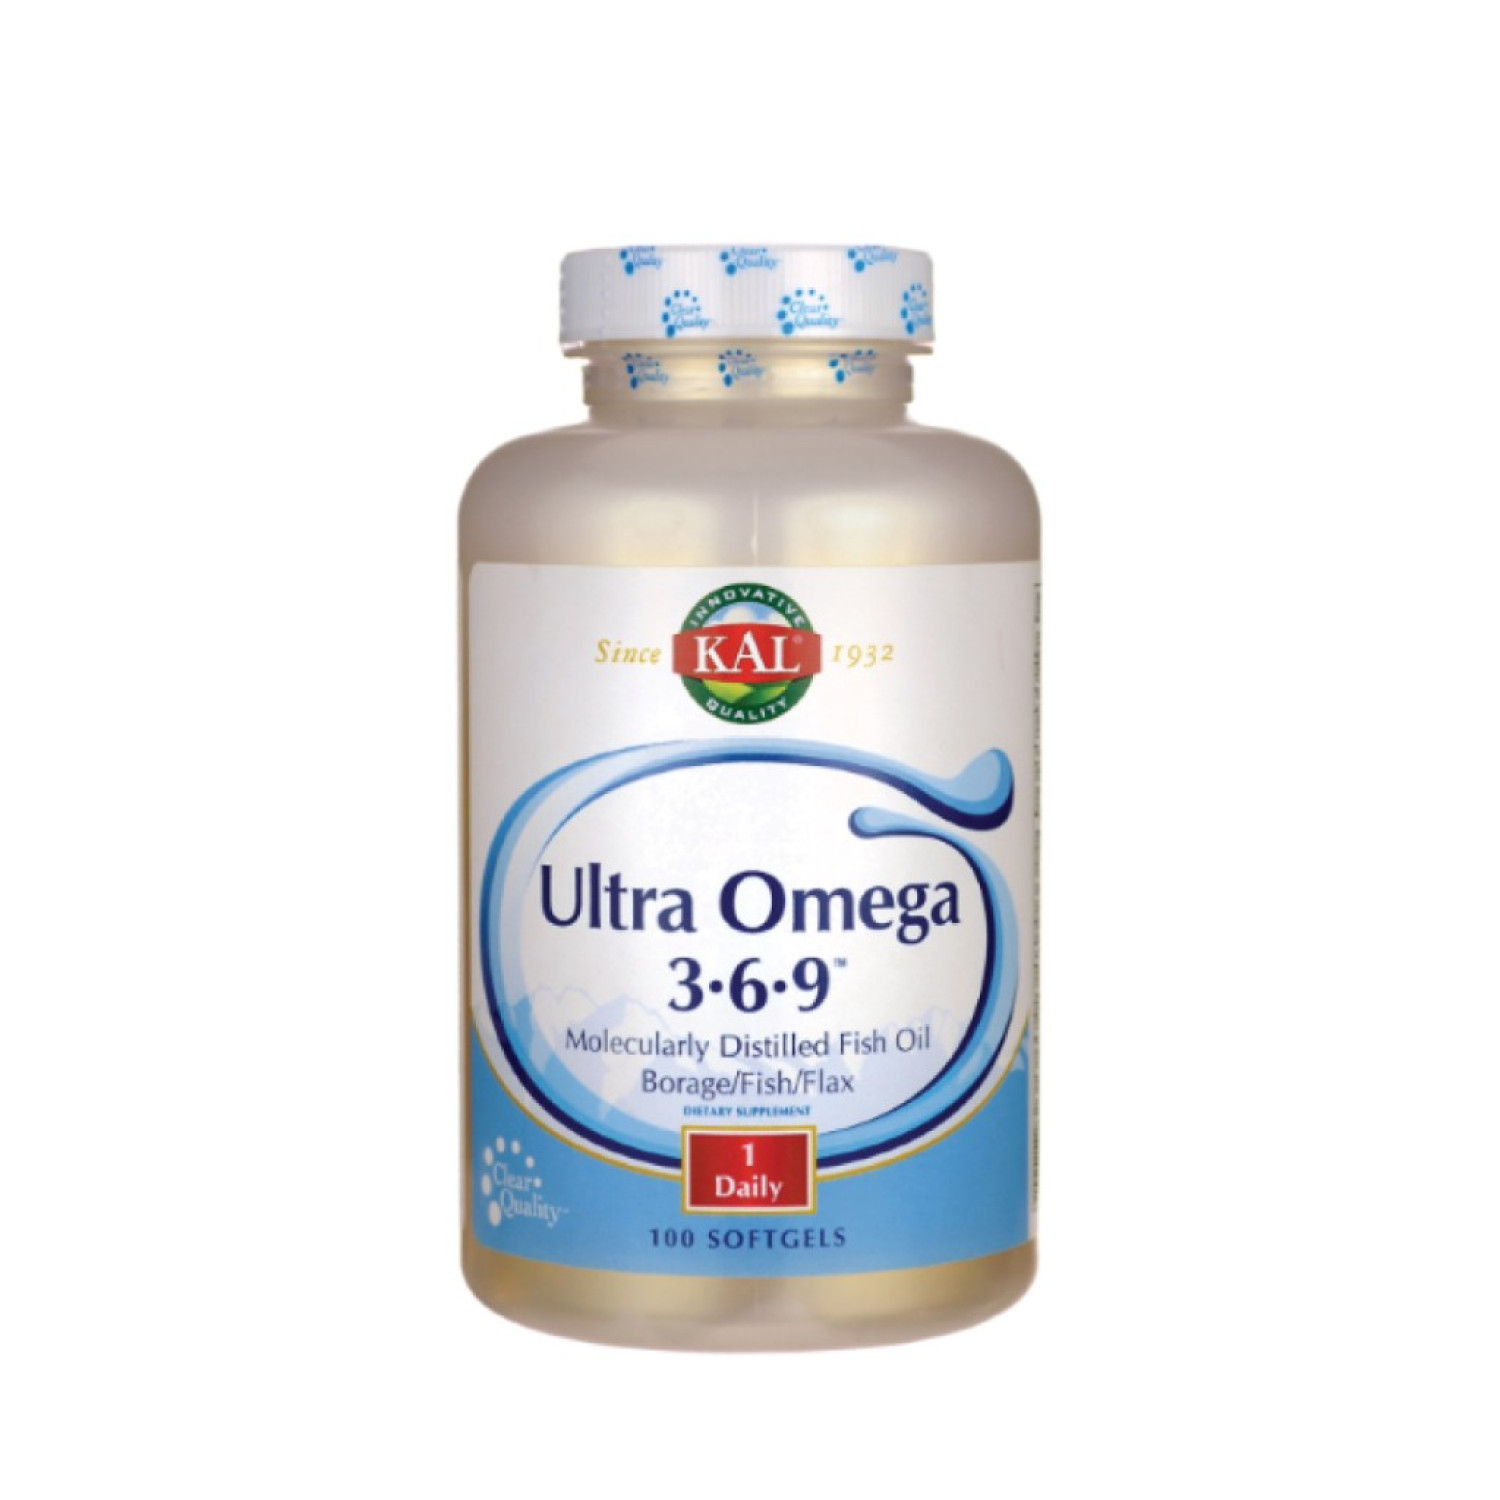 kal-ultra-omega-369-50-softgels-65447669c5c84.jpeg